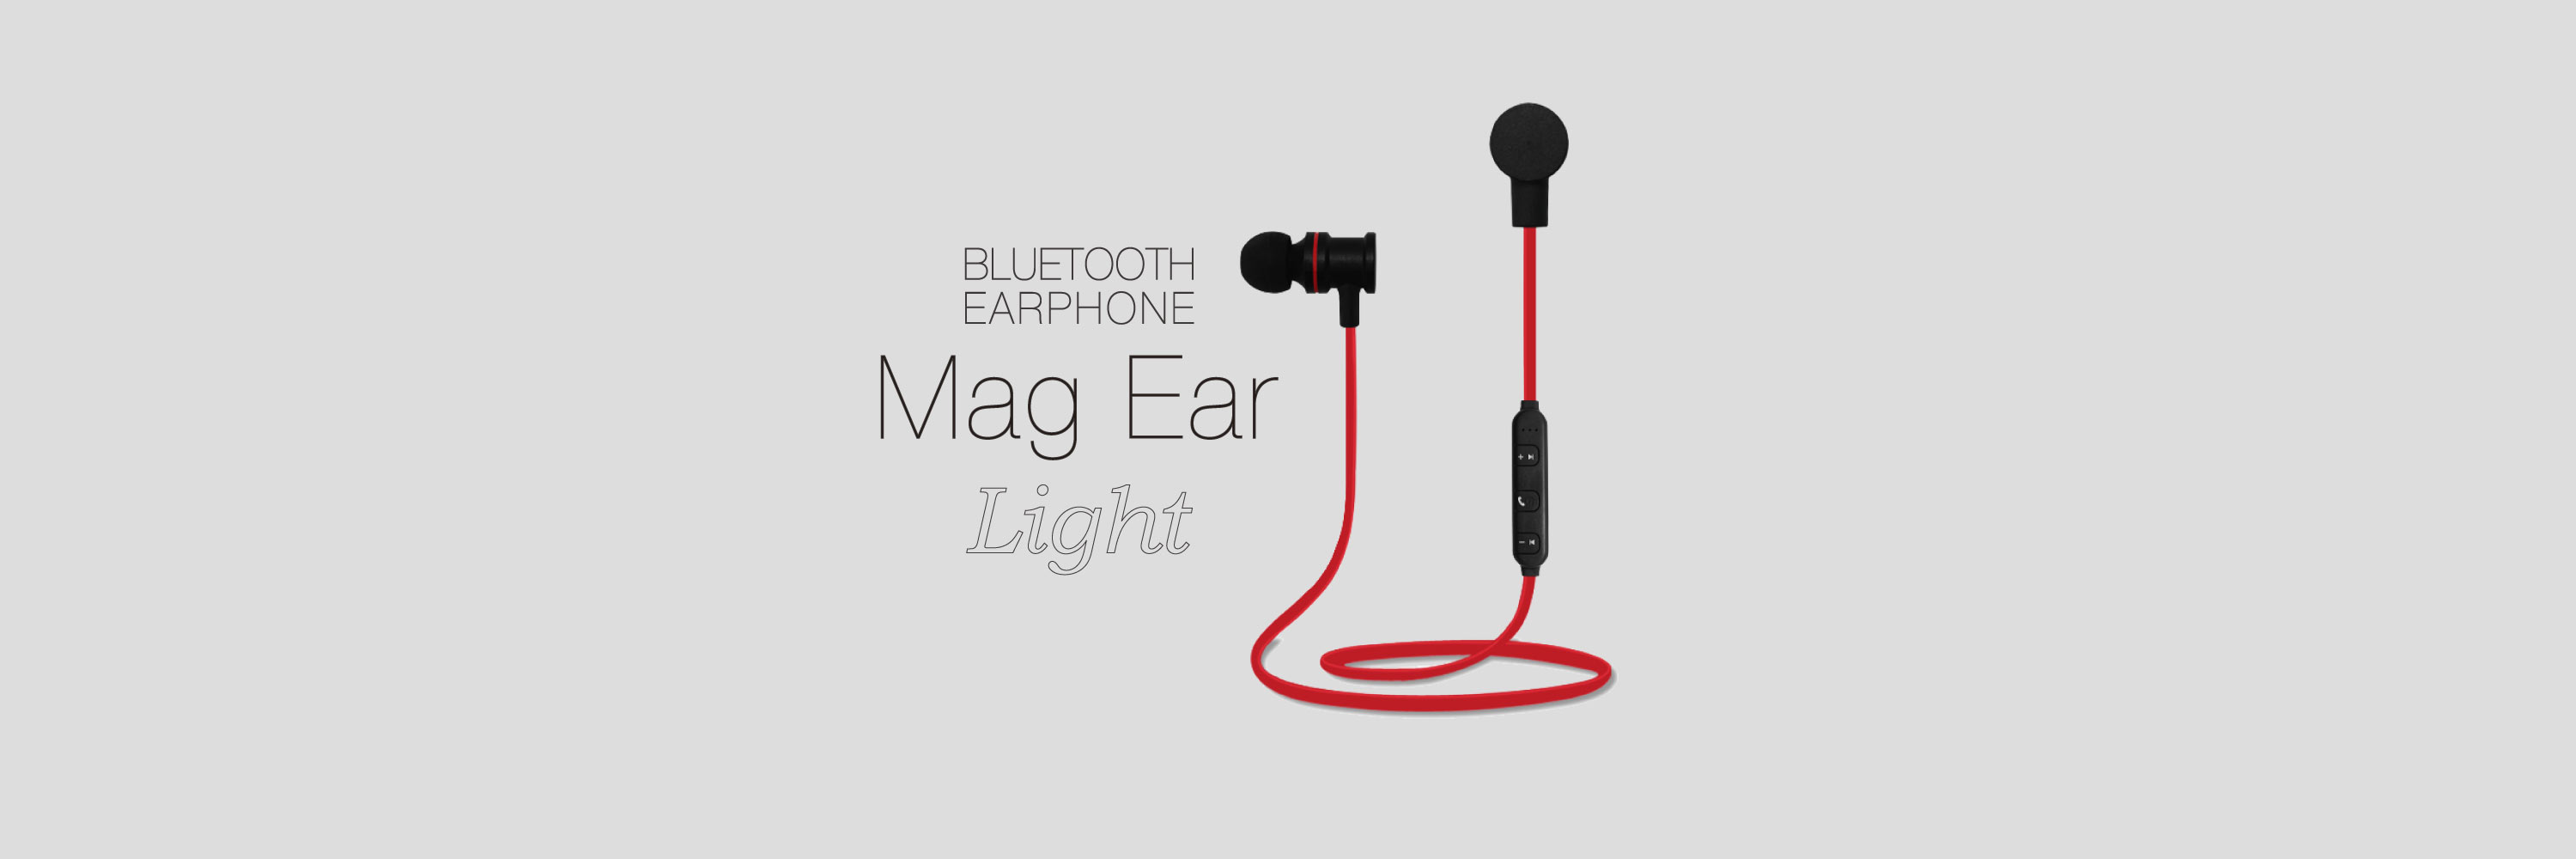 Bluetooth®イヤホン「Mag Ear Light」(本製品は生産終了しております)